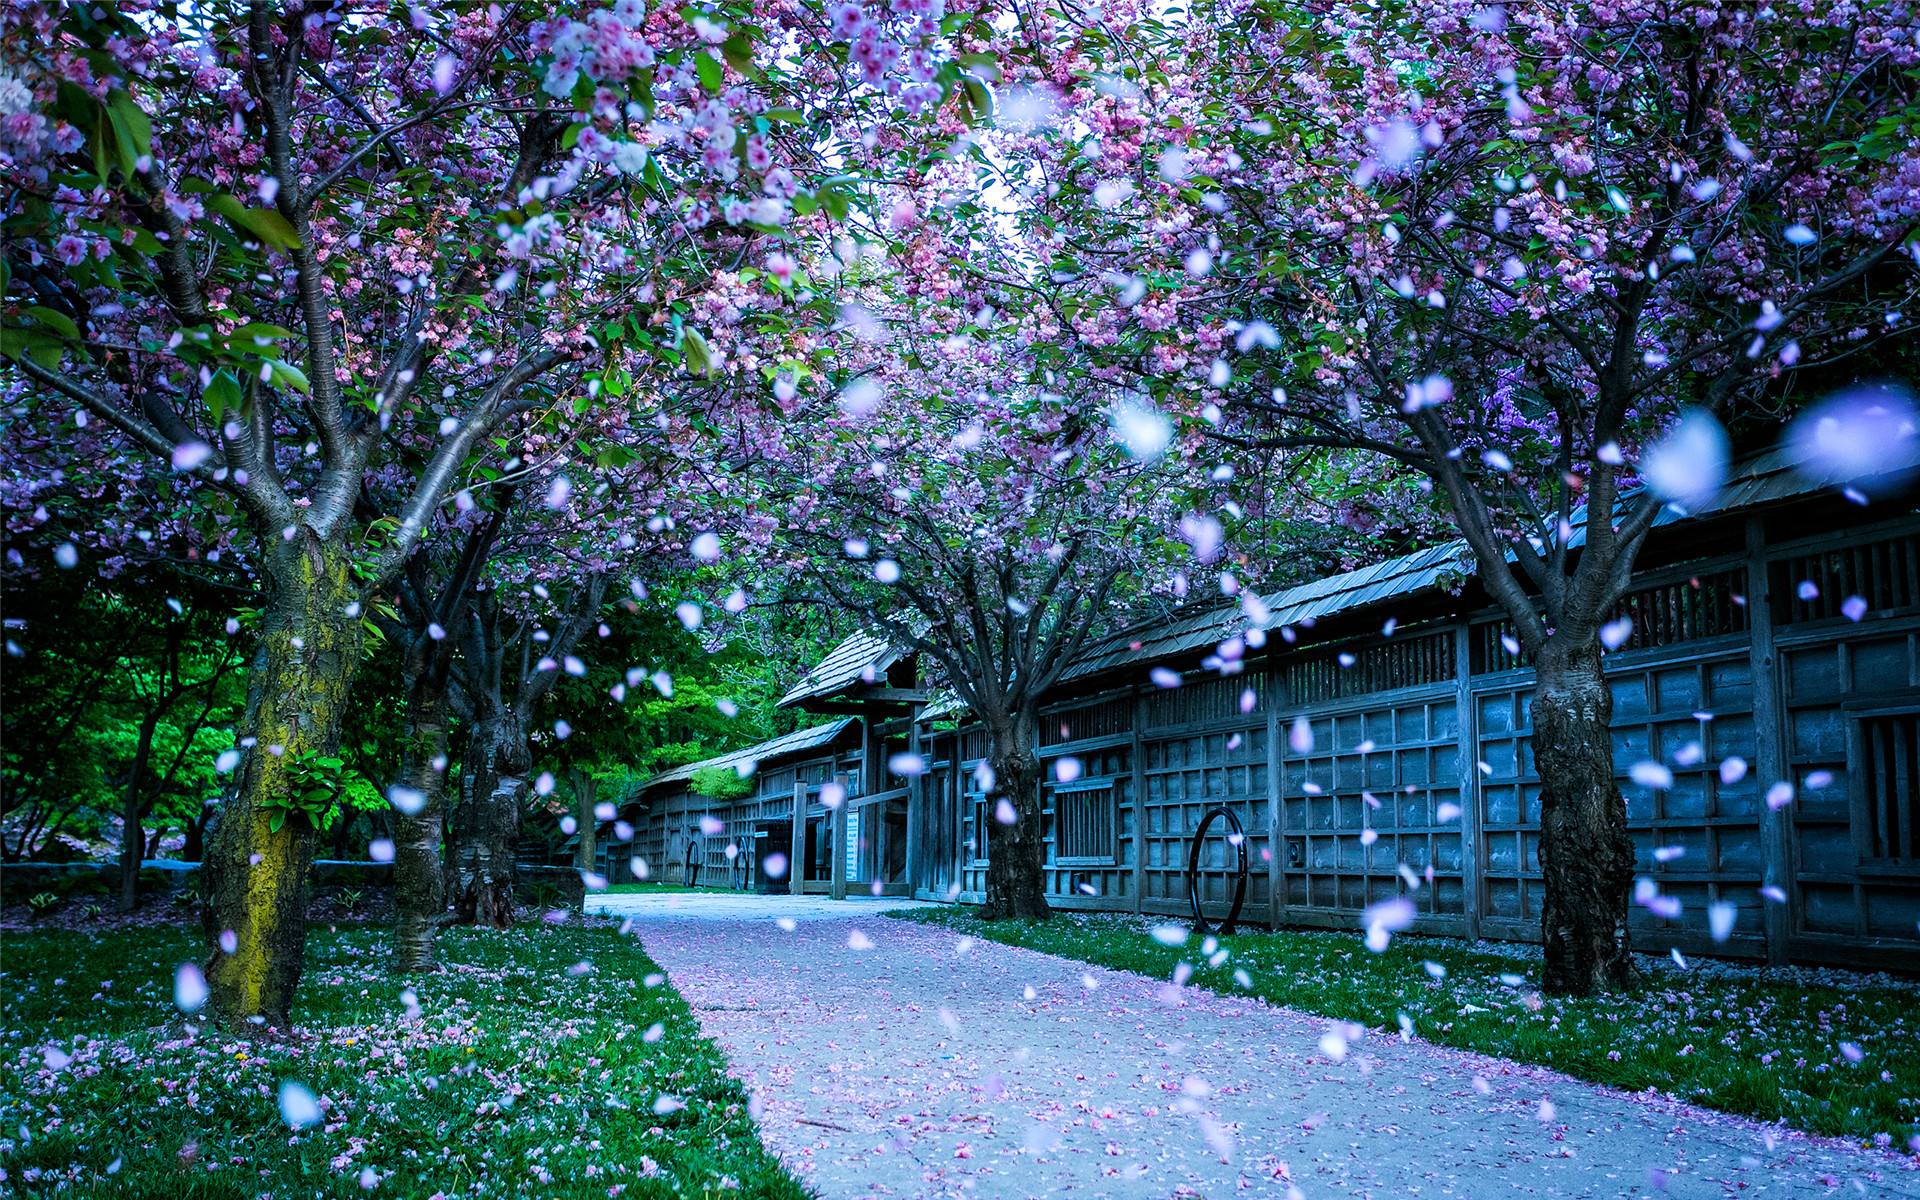 这里有世界三大赏樱胜地之一，与日本的弘前樱花园、美国的华盛顿樱花园齐名。